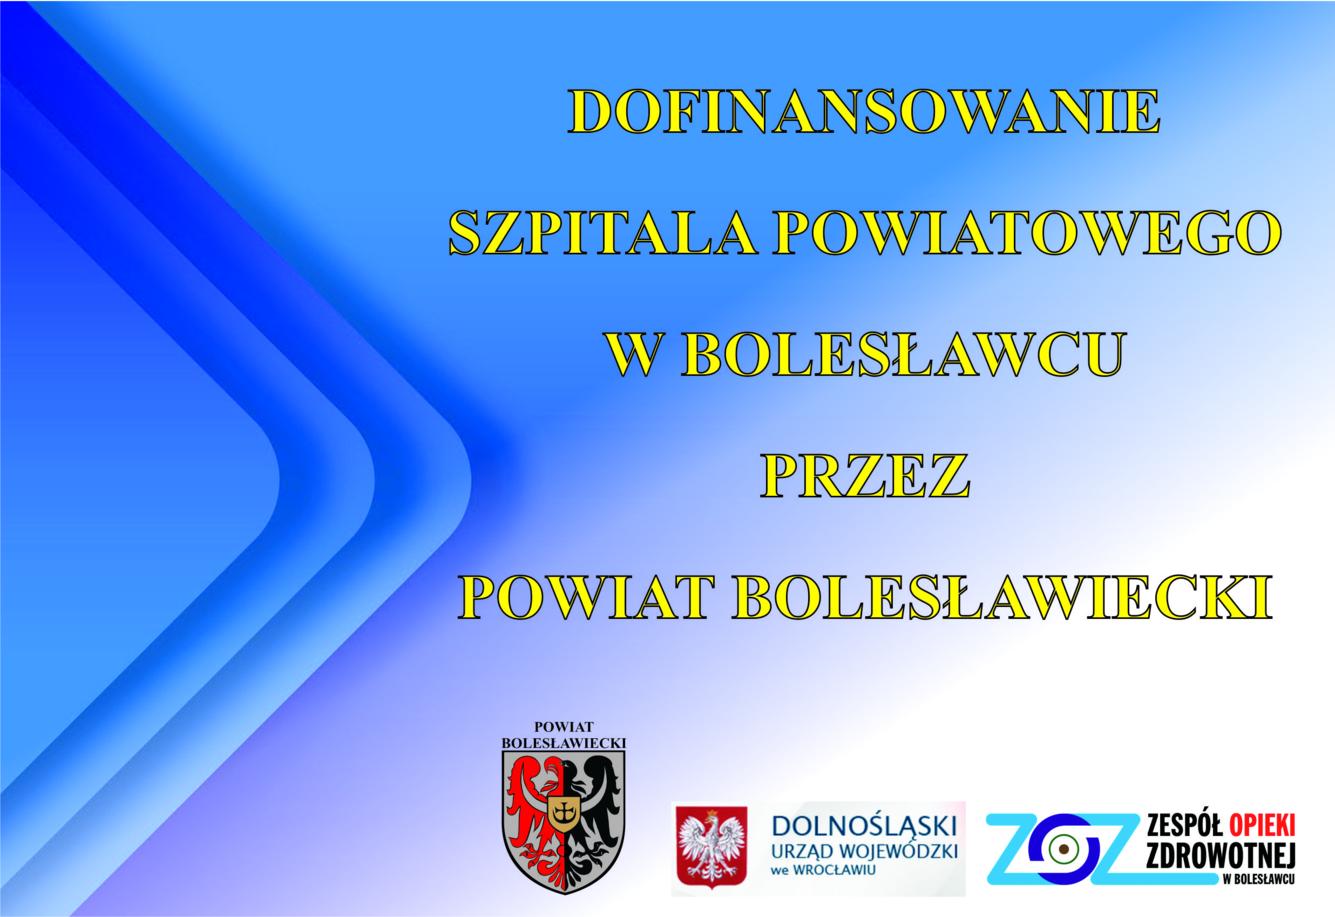 Dofinansowanie szpitala powiatowego  w Bolesławcu